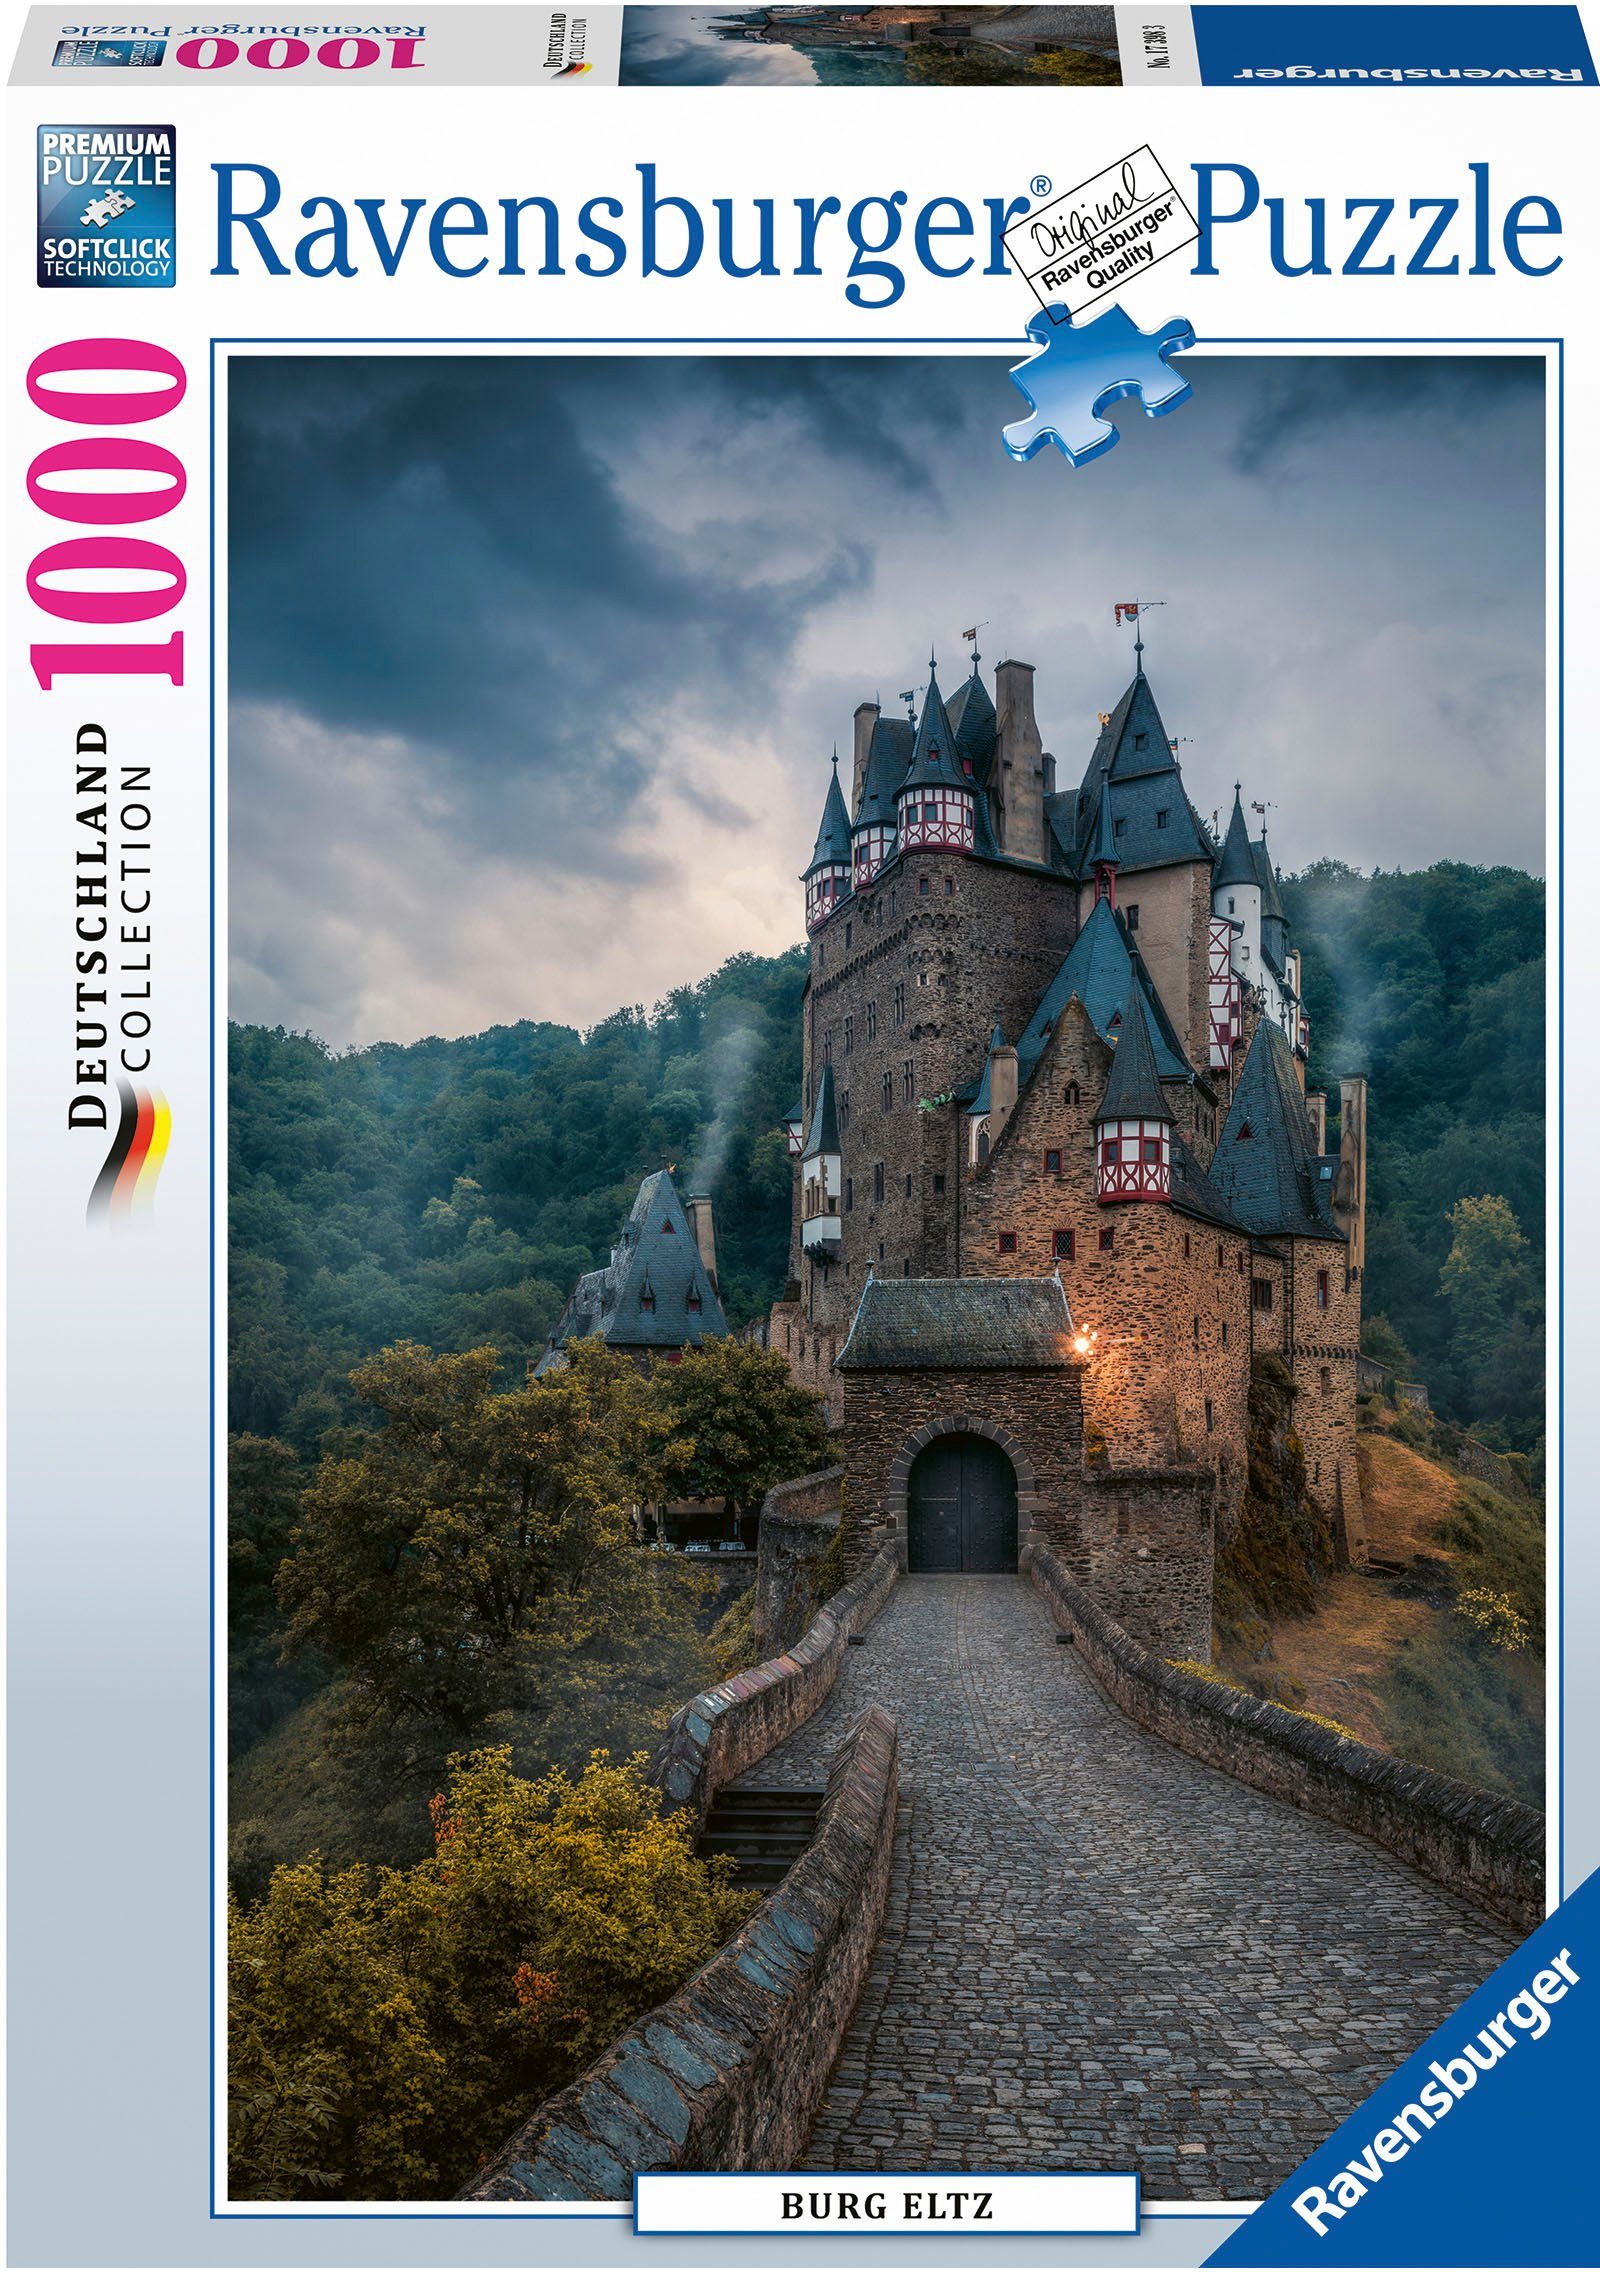 Ravensburger Puzzle Burg Eltz, 1000 Puzzleteile, Made in Germany; FSC® -  schützt Wald - weltweit, 1000 Teile Ravensburger Puzzle Burg Eltz 17398